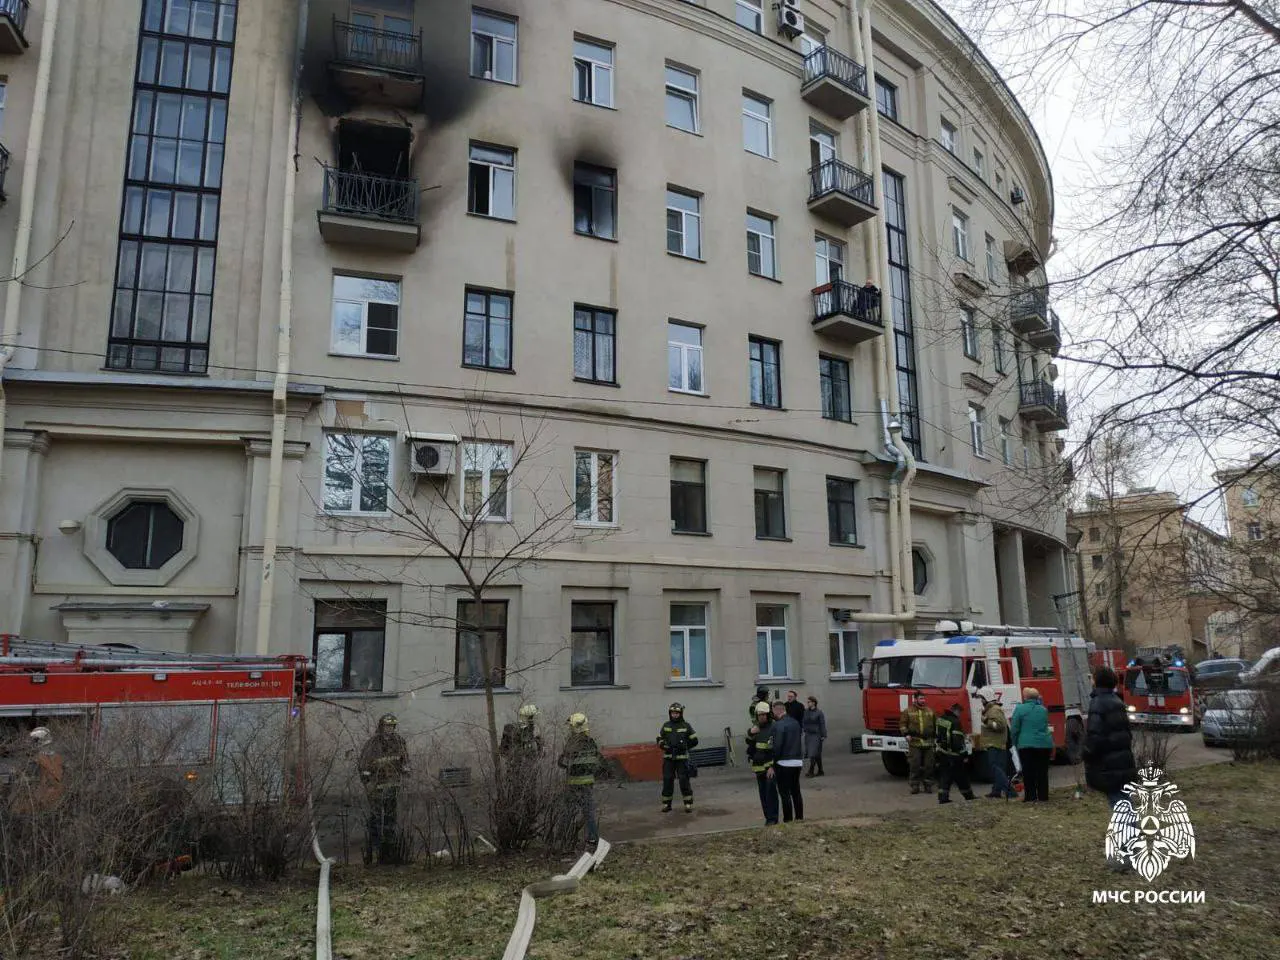 МЧС России: в Санкт-Петербурге спасли на пожаре двух детей